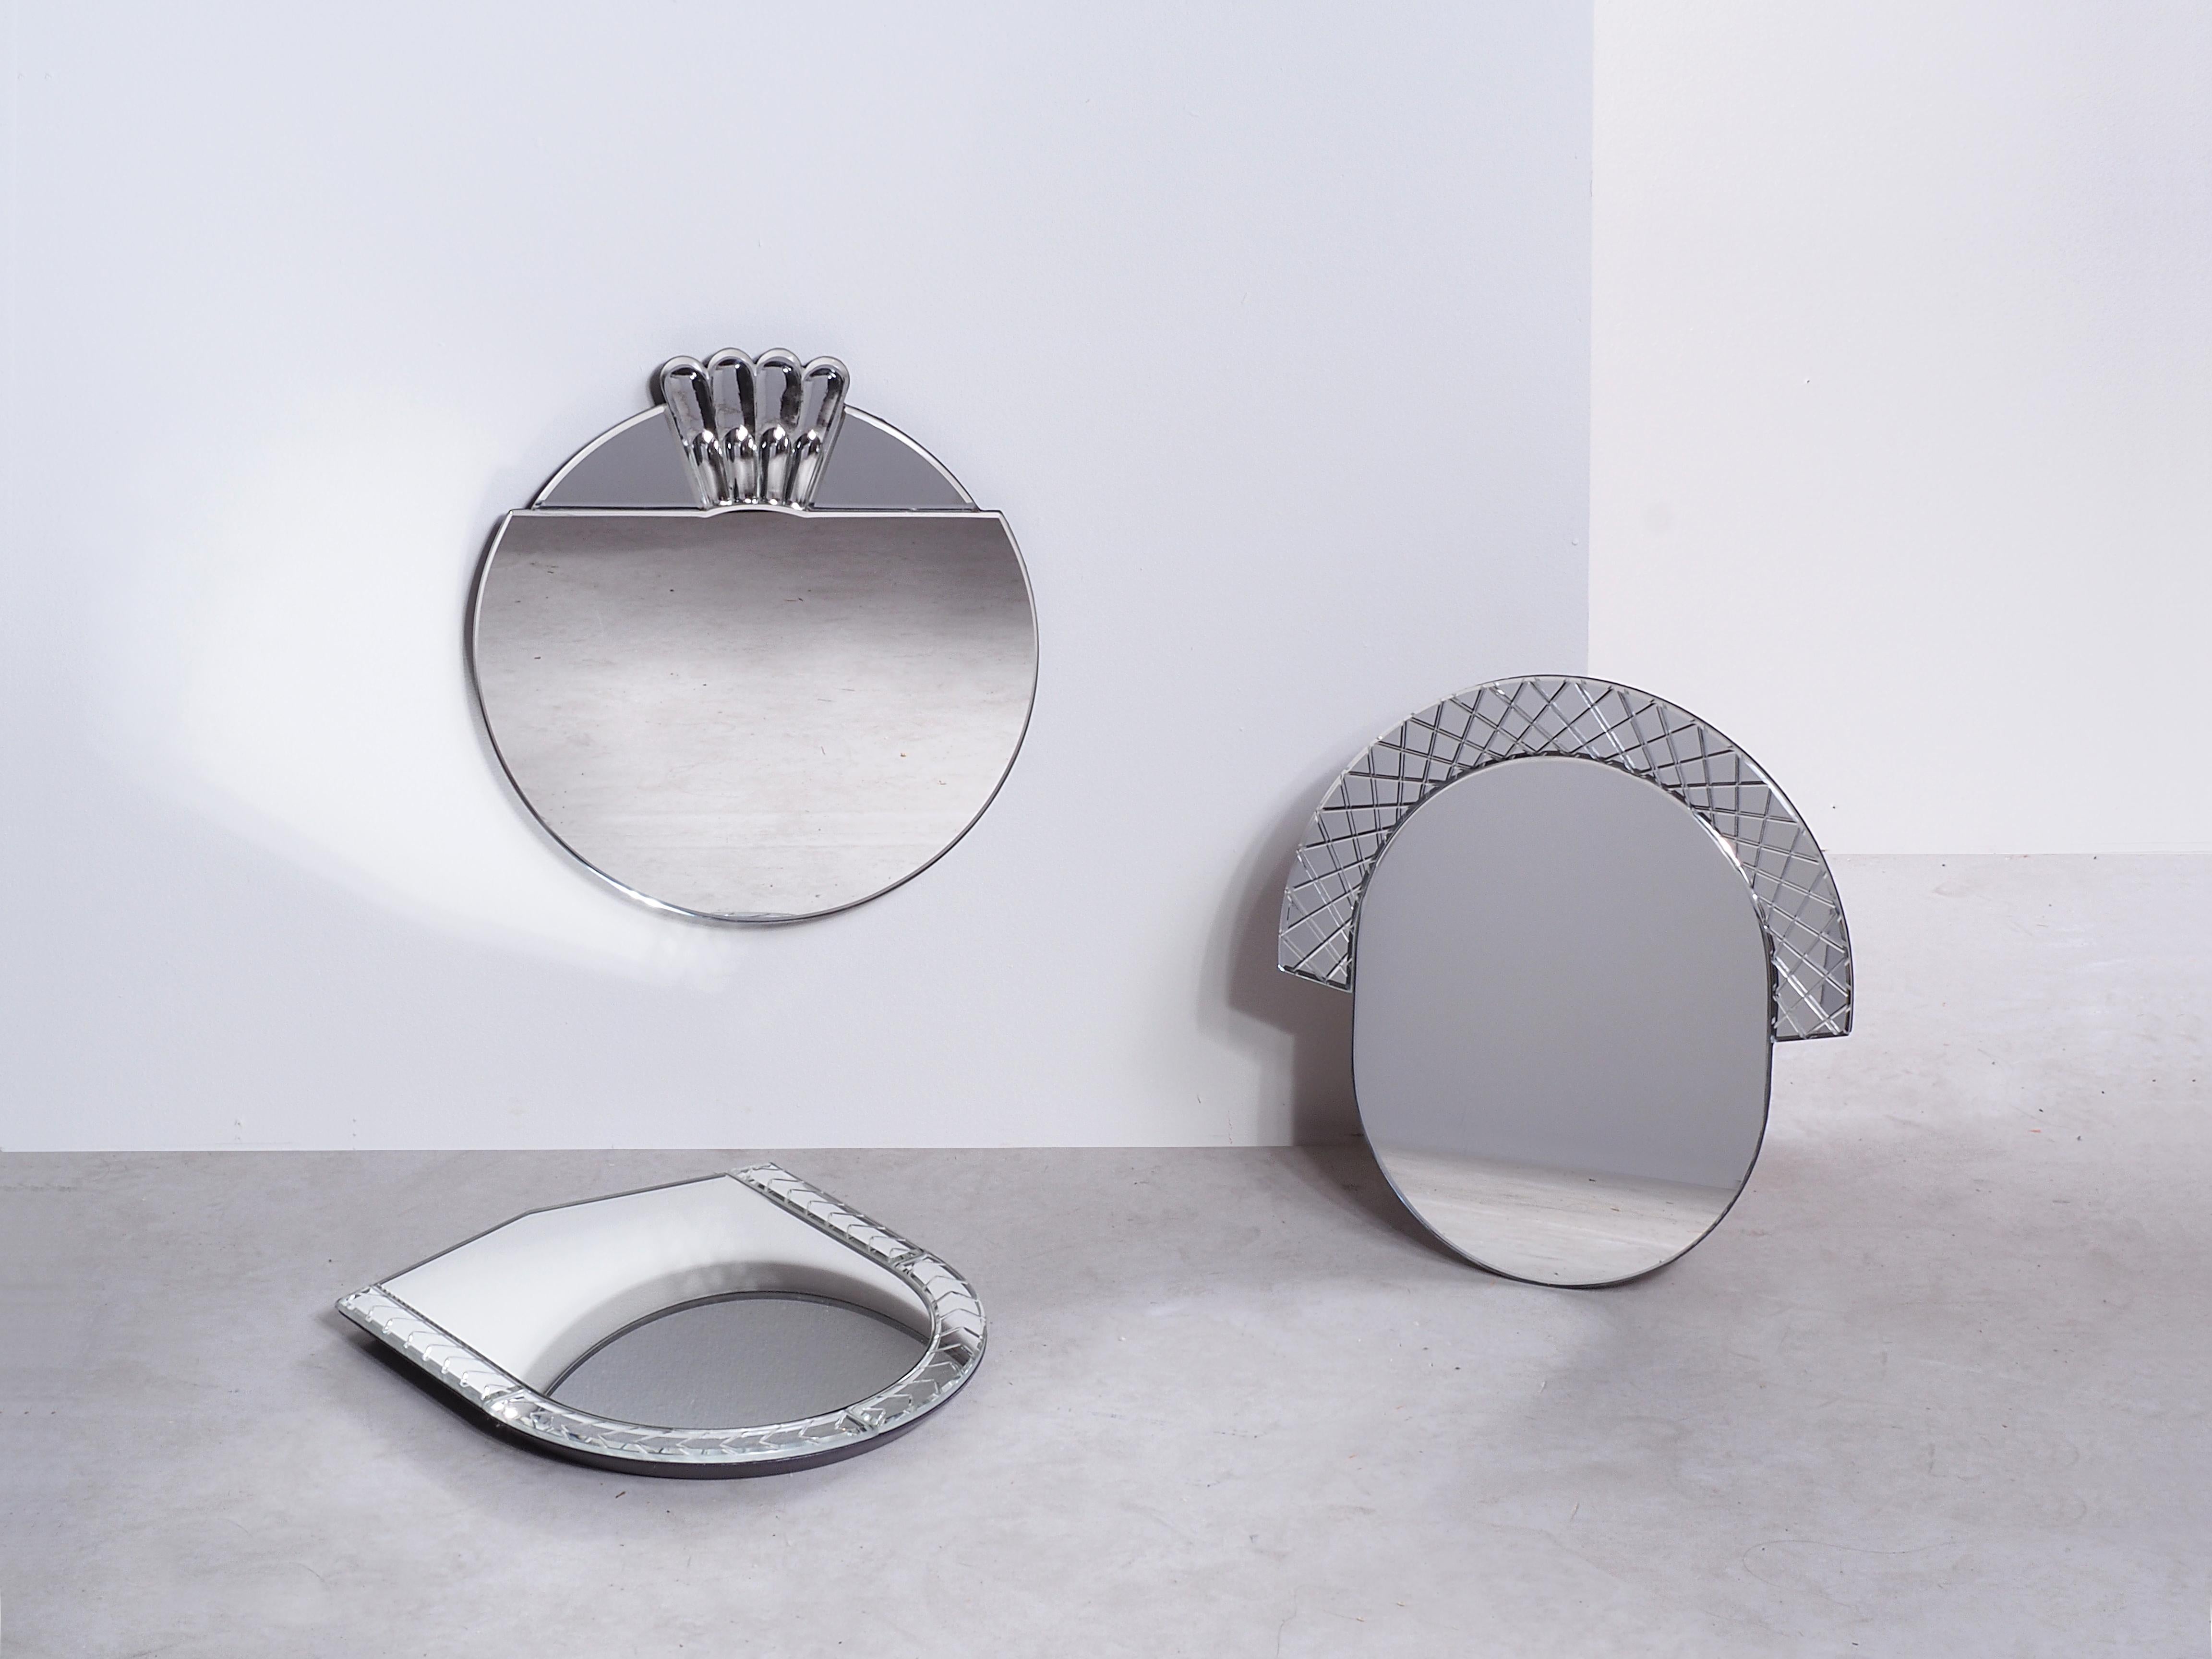 Silvered Scena Elemento Due Murano Mirror by Nikolai Kotlarczyk